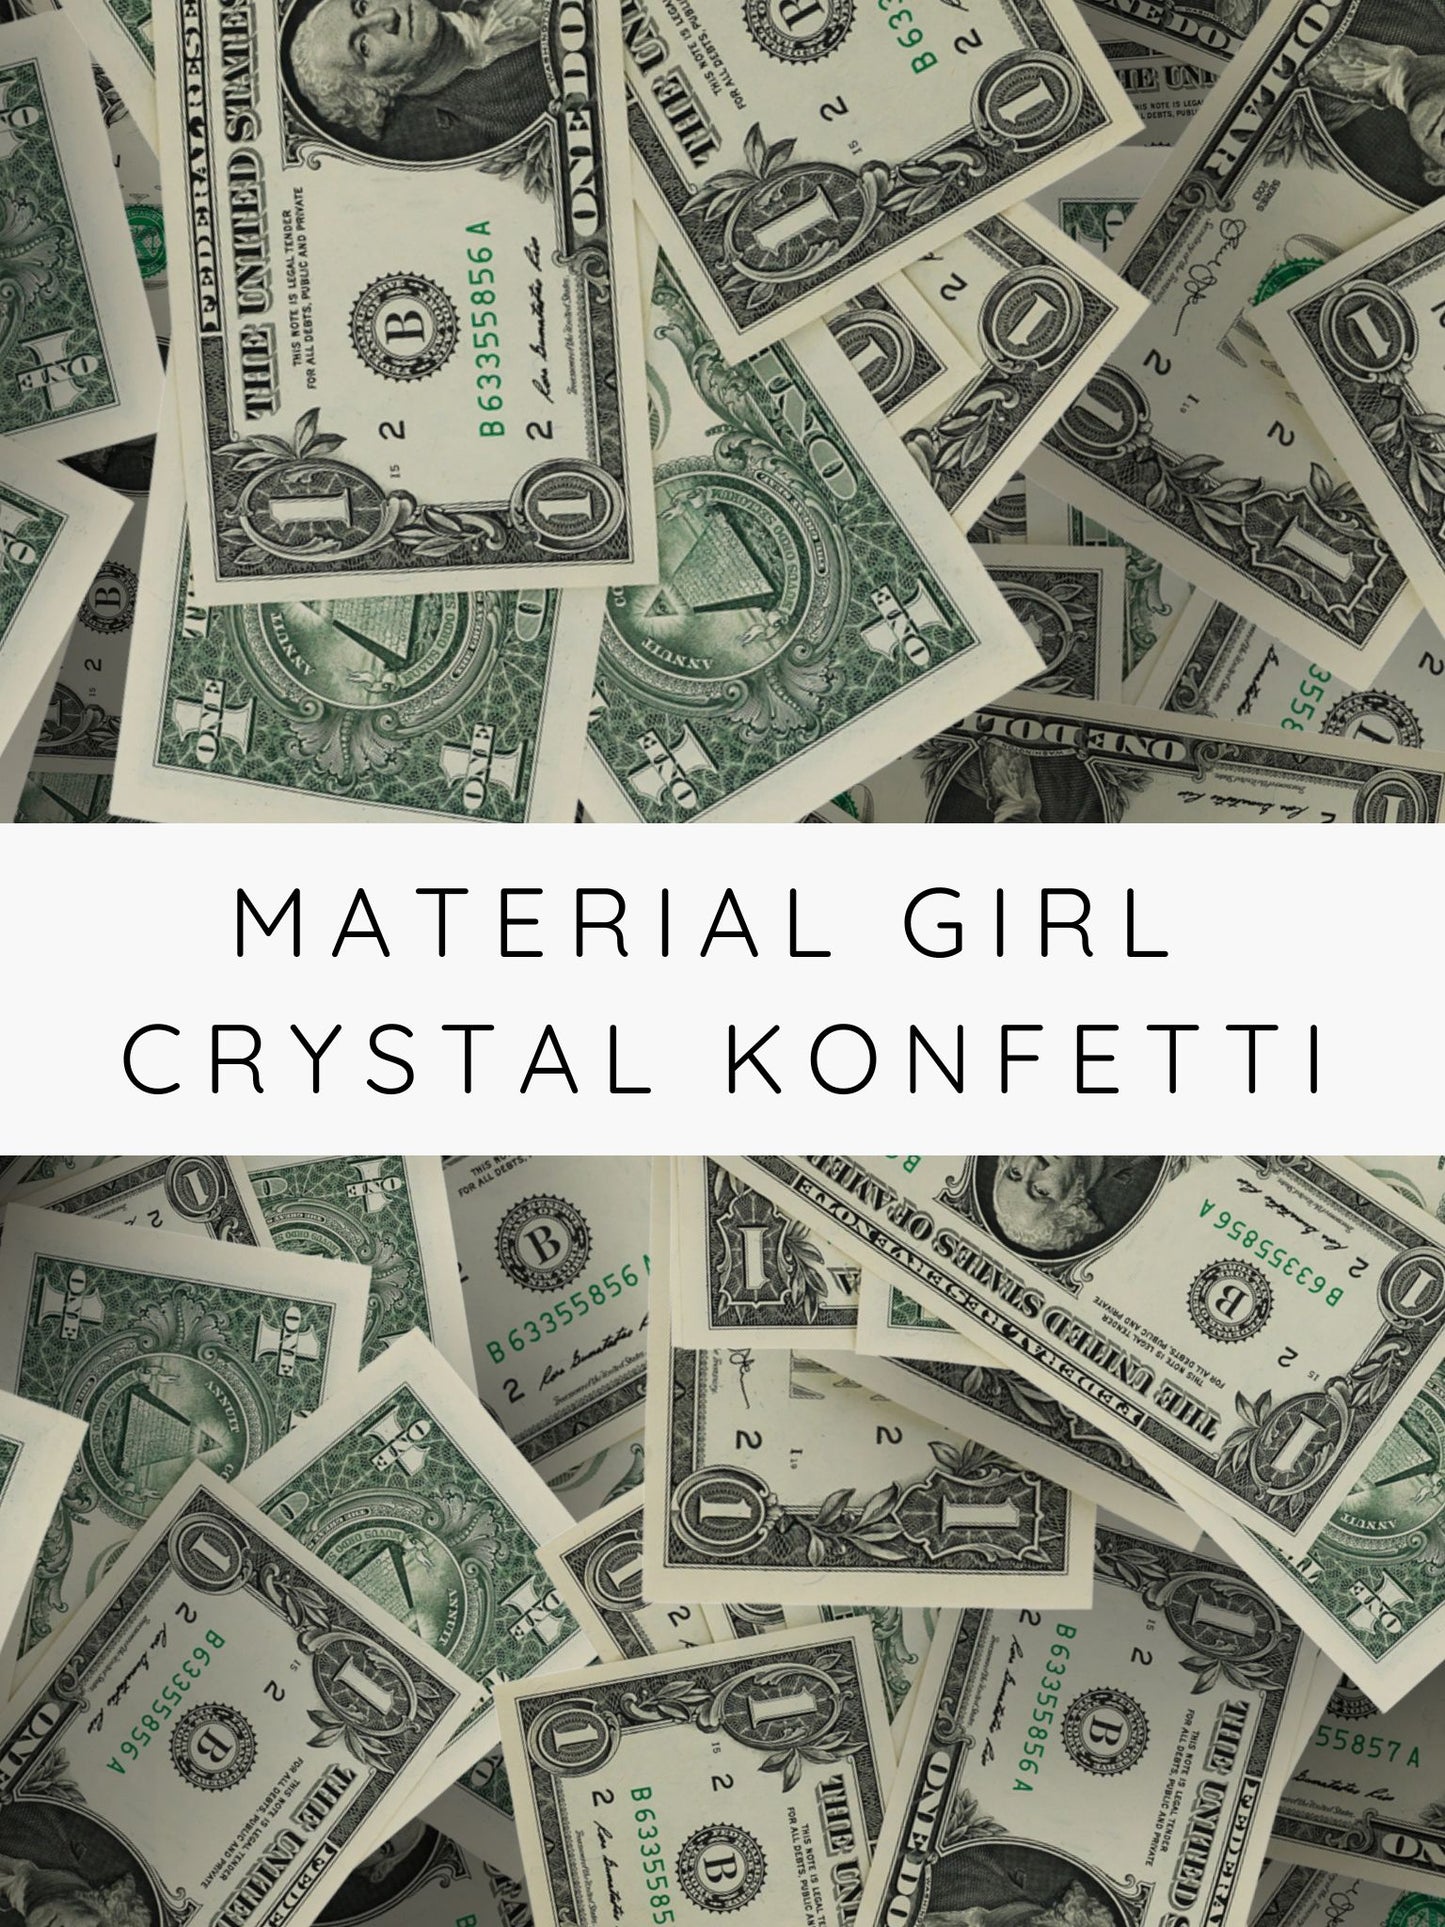 AQUAGEMS IM A MATERIAL GIRL!  CRYSTAL CONFETTI  / Kristall Konfetti - High Quality